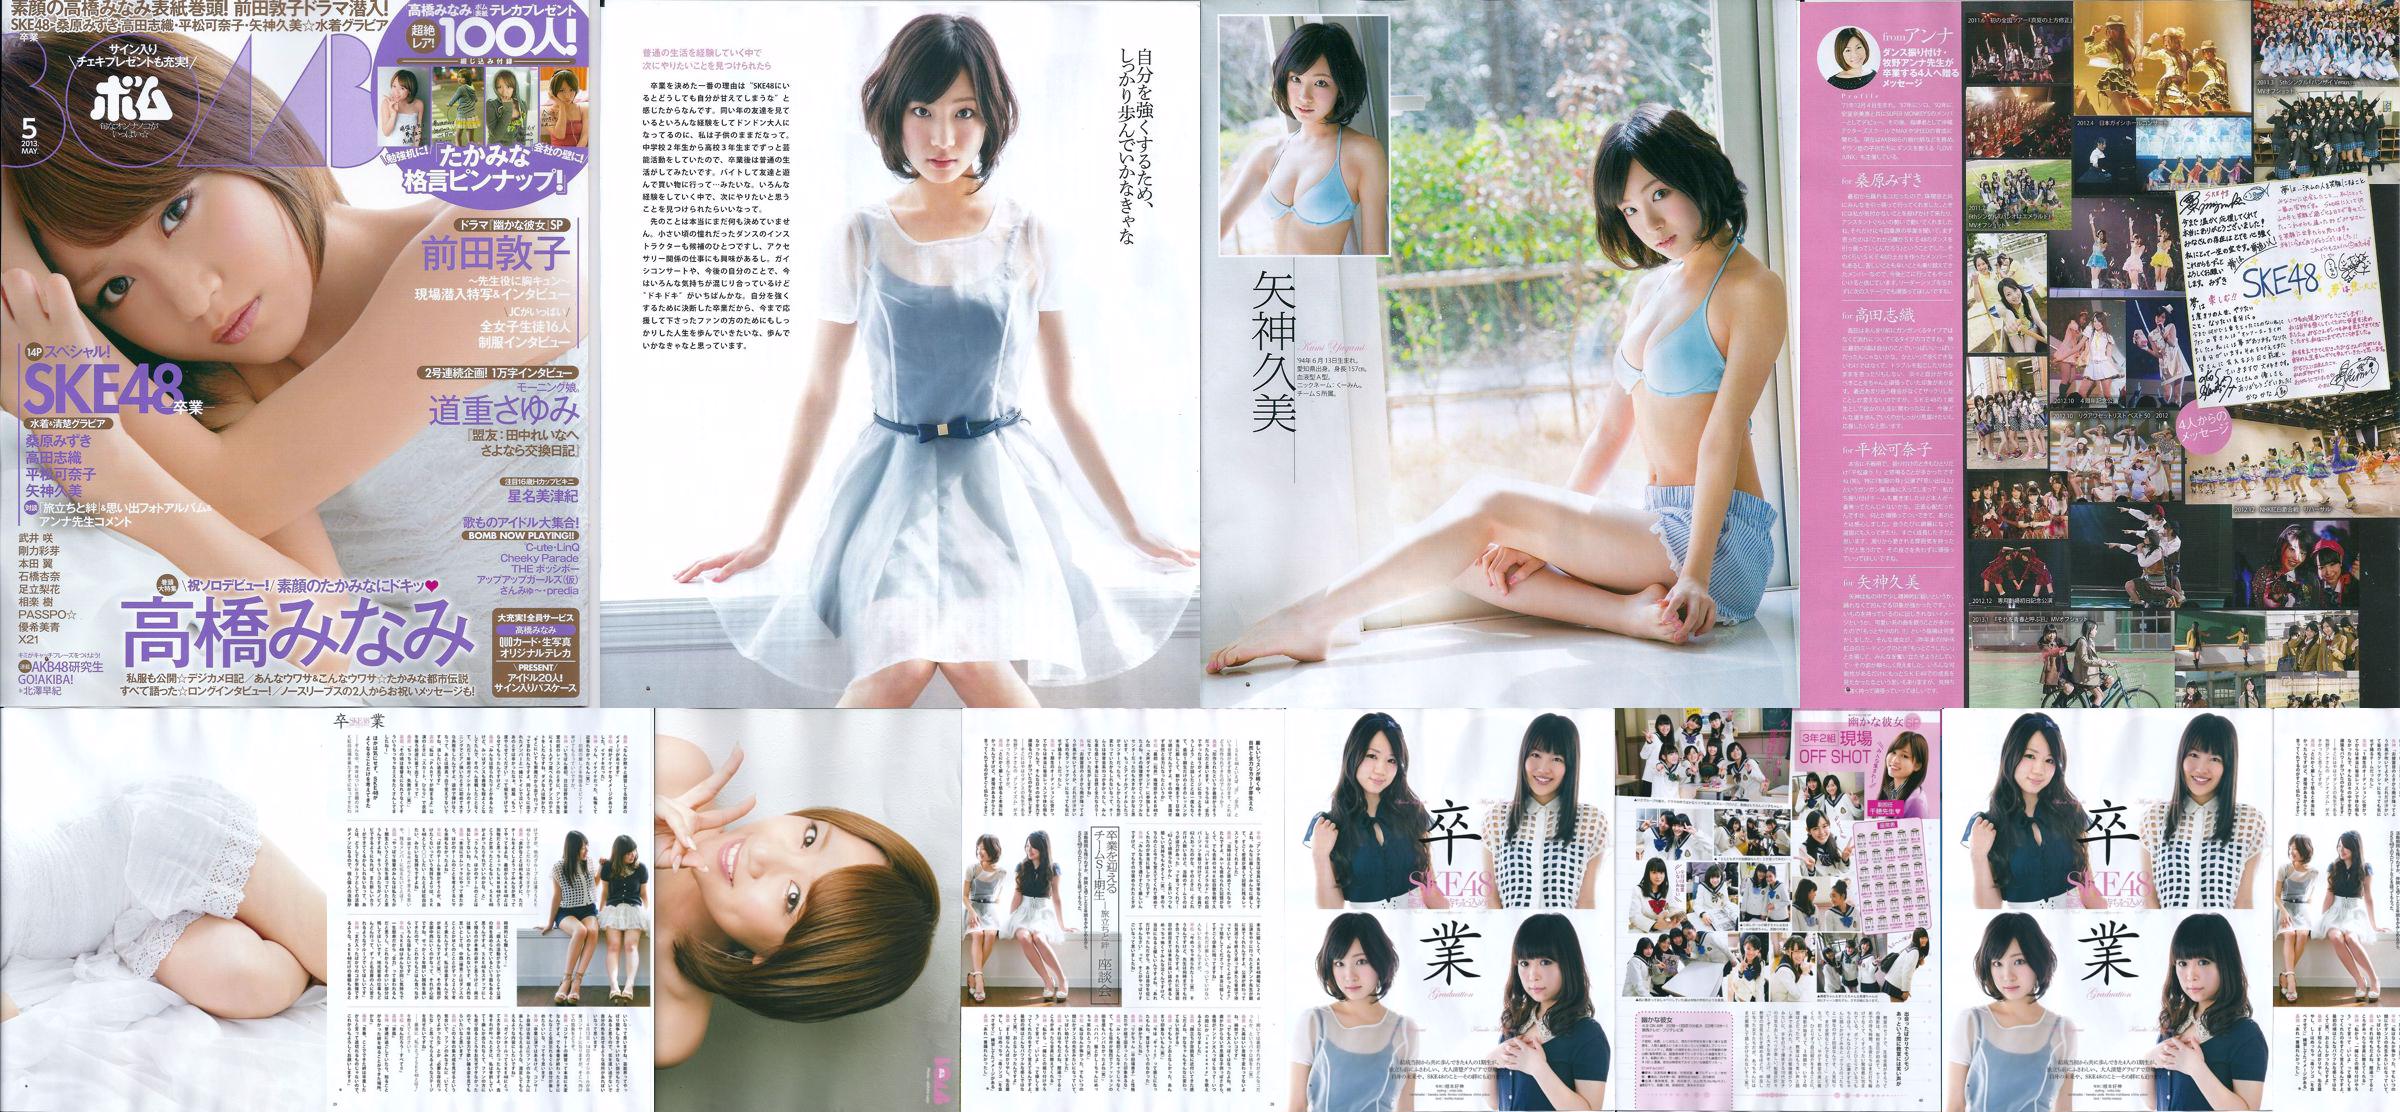 [Bomb Magazine] 2013 No.05 Kumi Yagami Minami Takahashi Atsuko Maeda Foto No.fb8d78 Seite 1